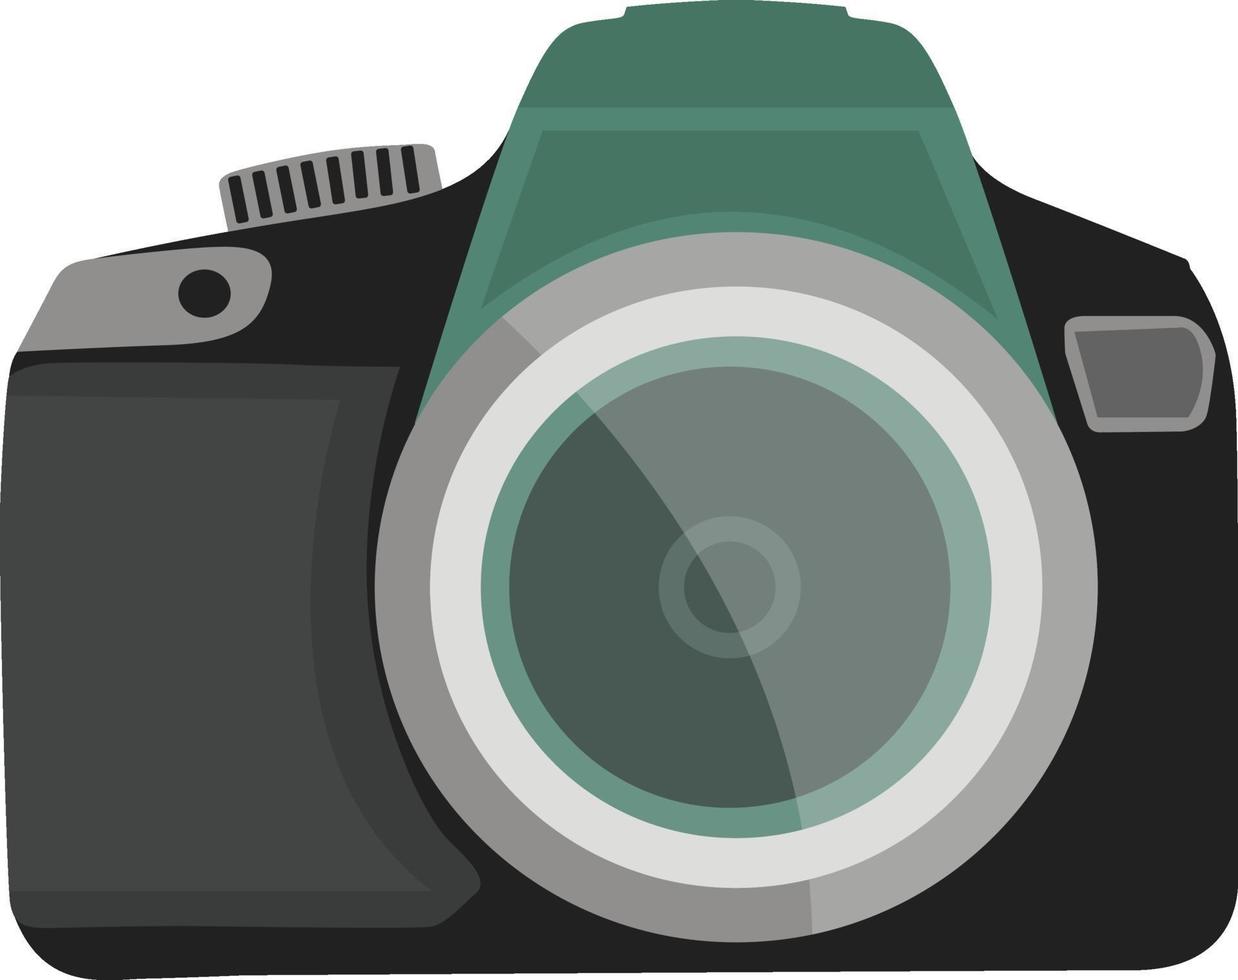 schwarze Kamera, Illustration, Vektor auf weißem Hintergrund.